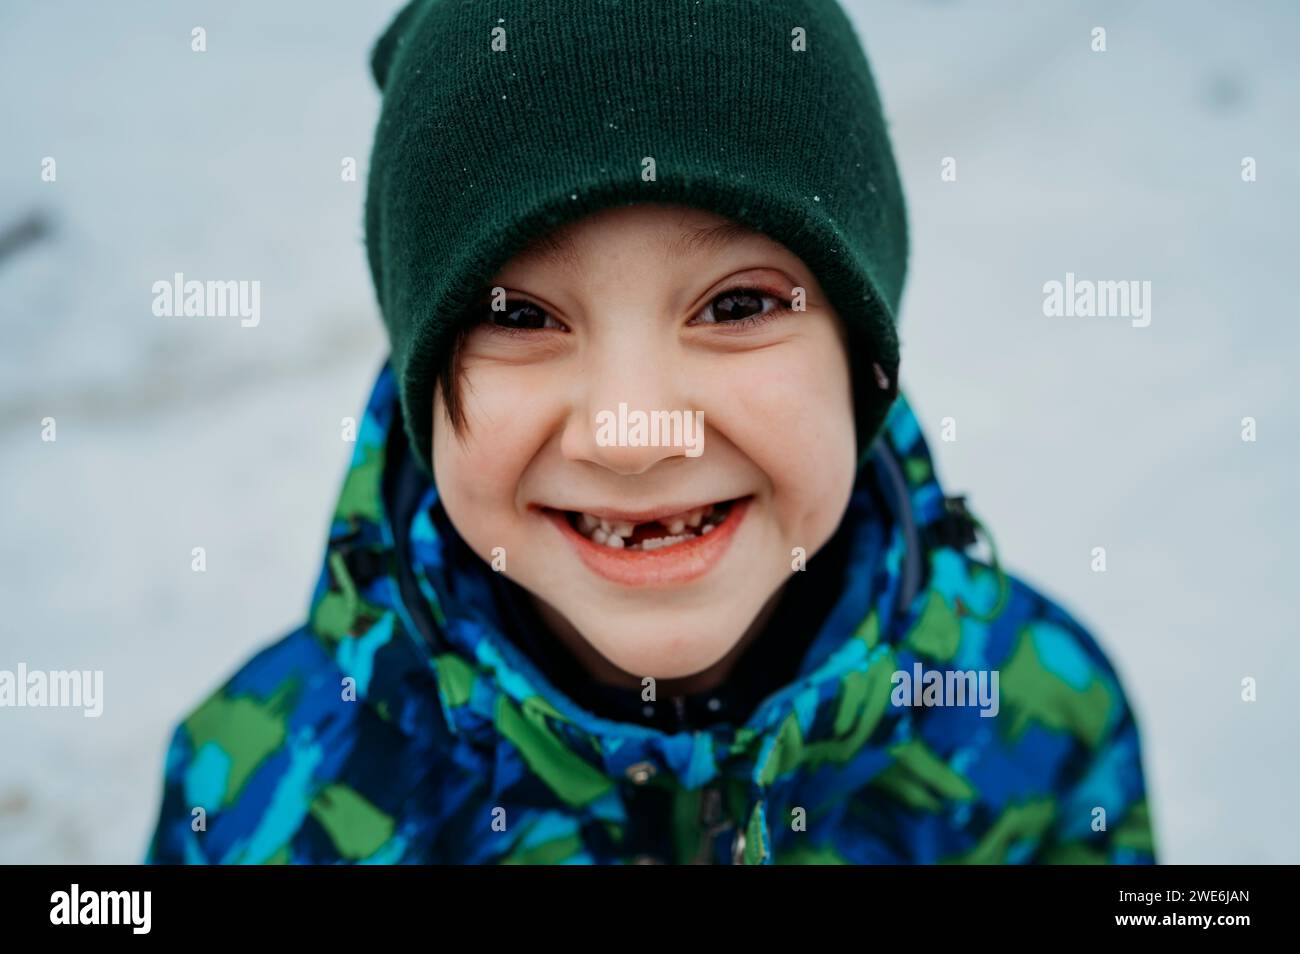 Happy boy wearing knit hat in winter Stock Photo